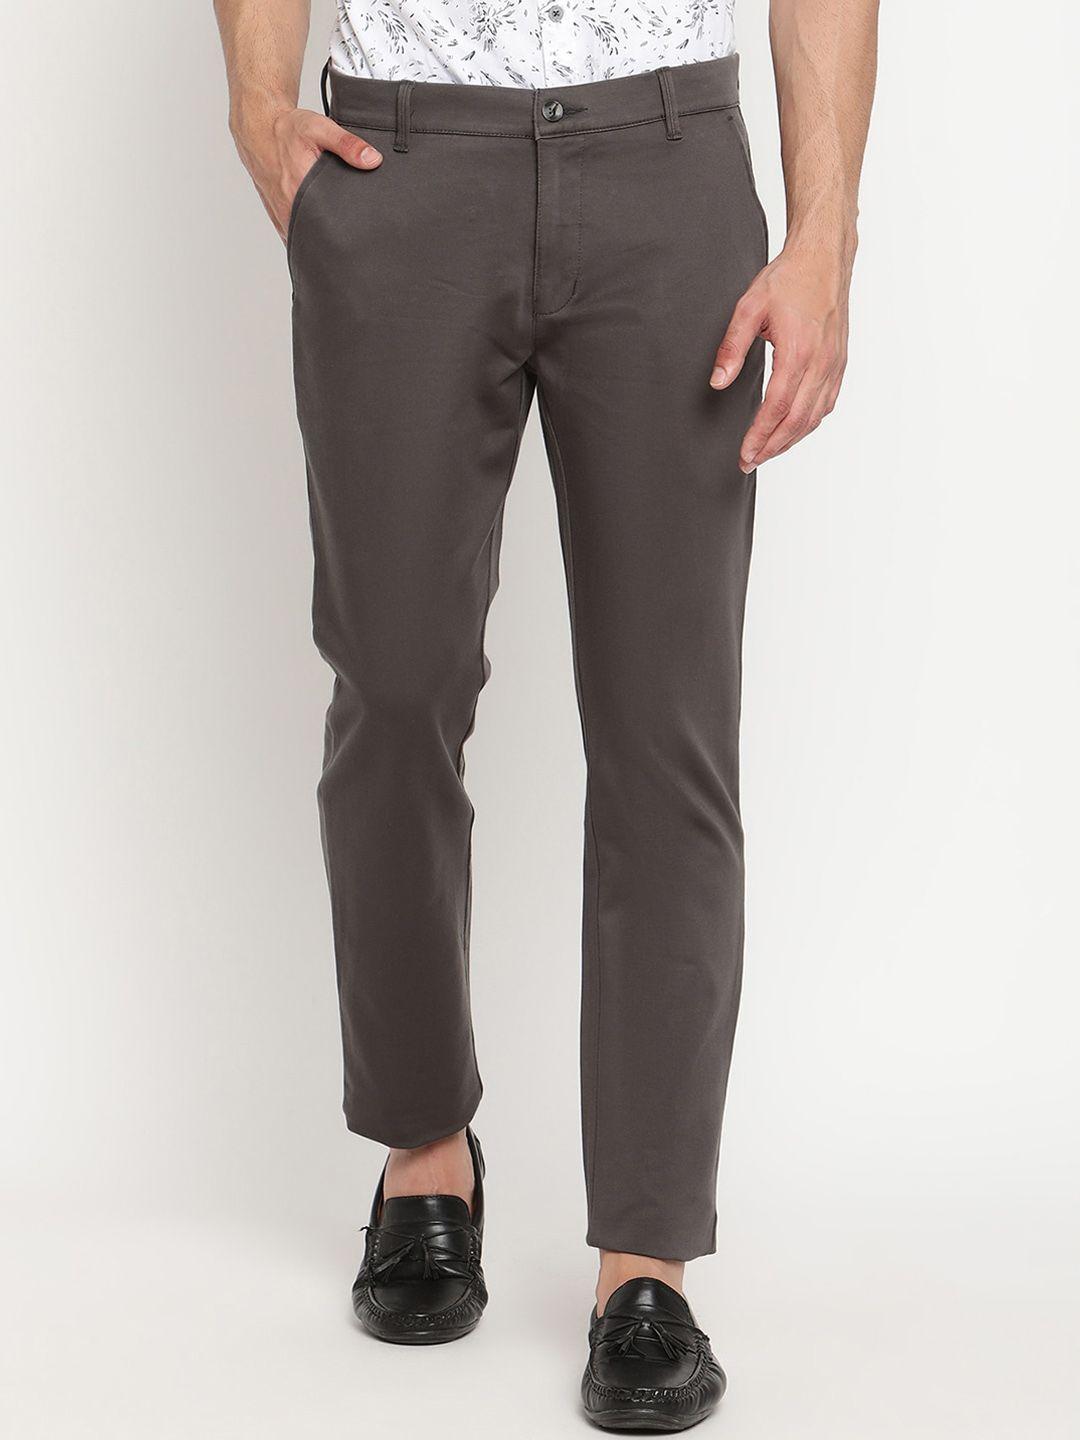 cantabil-men-brown-original-trousers